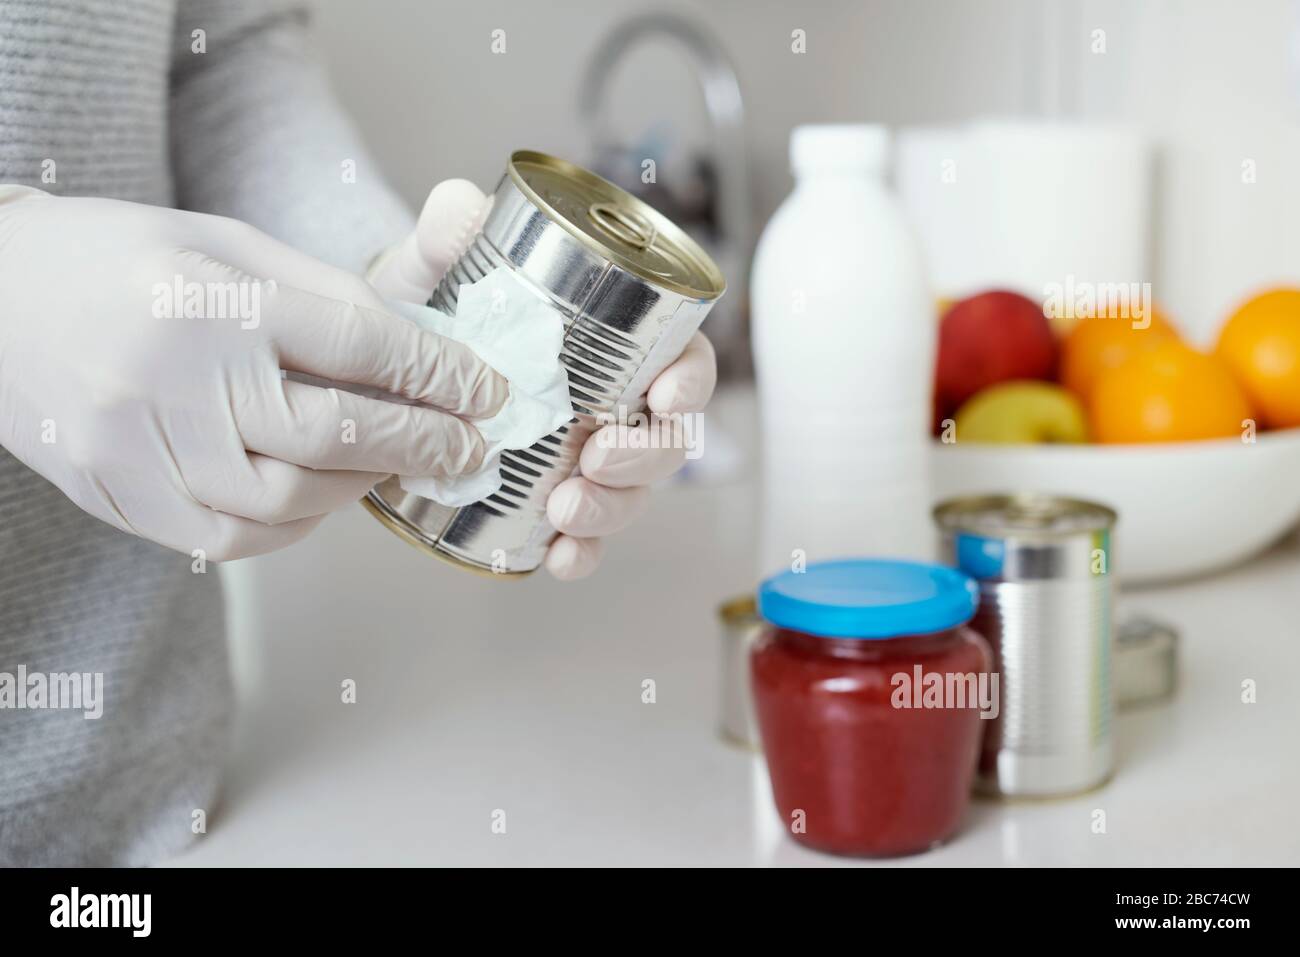 Nahaufnahme eines Mannes in der Küche, mit Latexhandschuhen, Reinigungsmitteldosen und Gläsern, frisch gekauft, mit einem Desinfektionsmittel Stockfoto